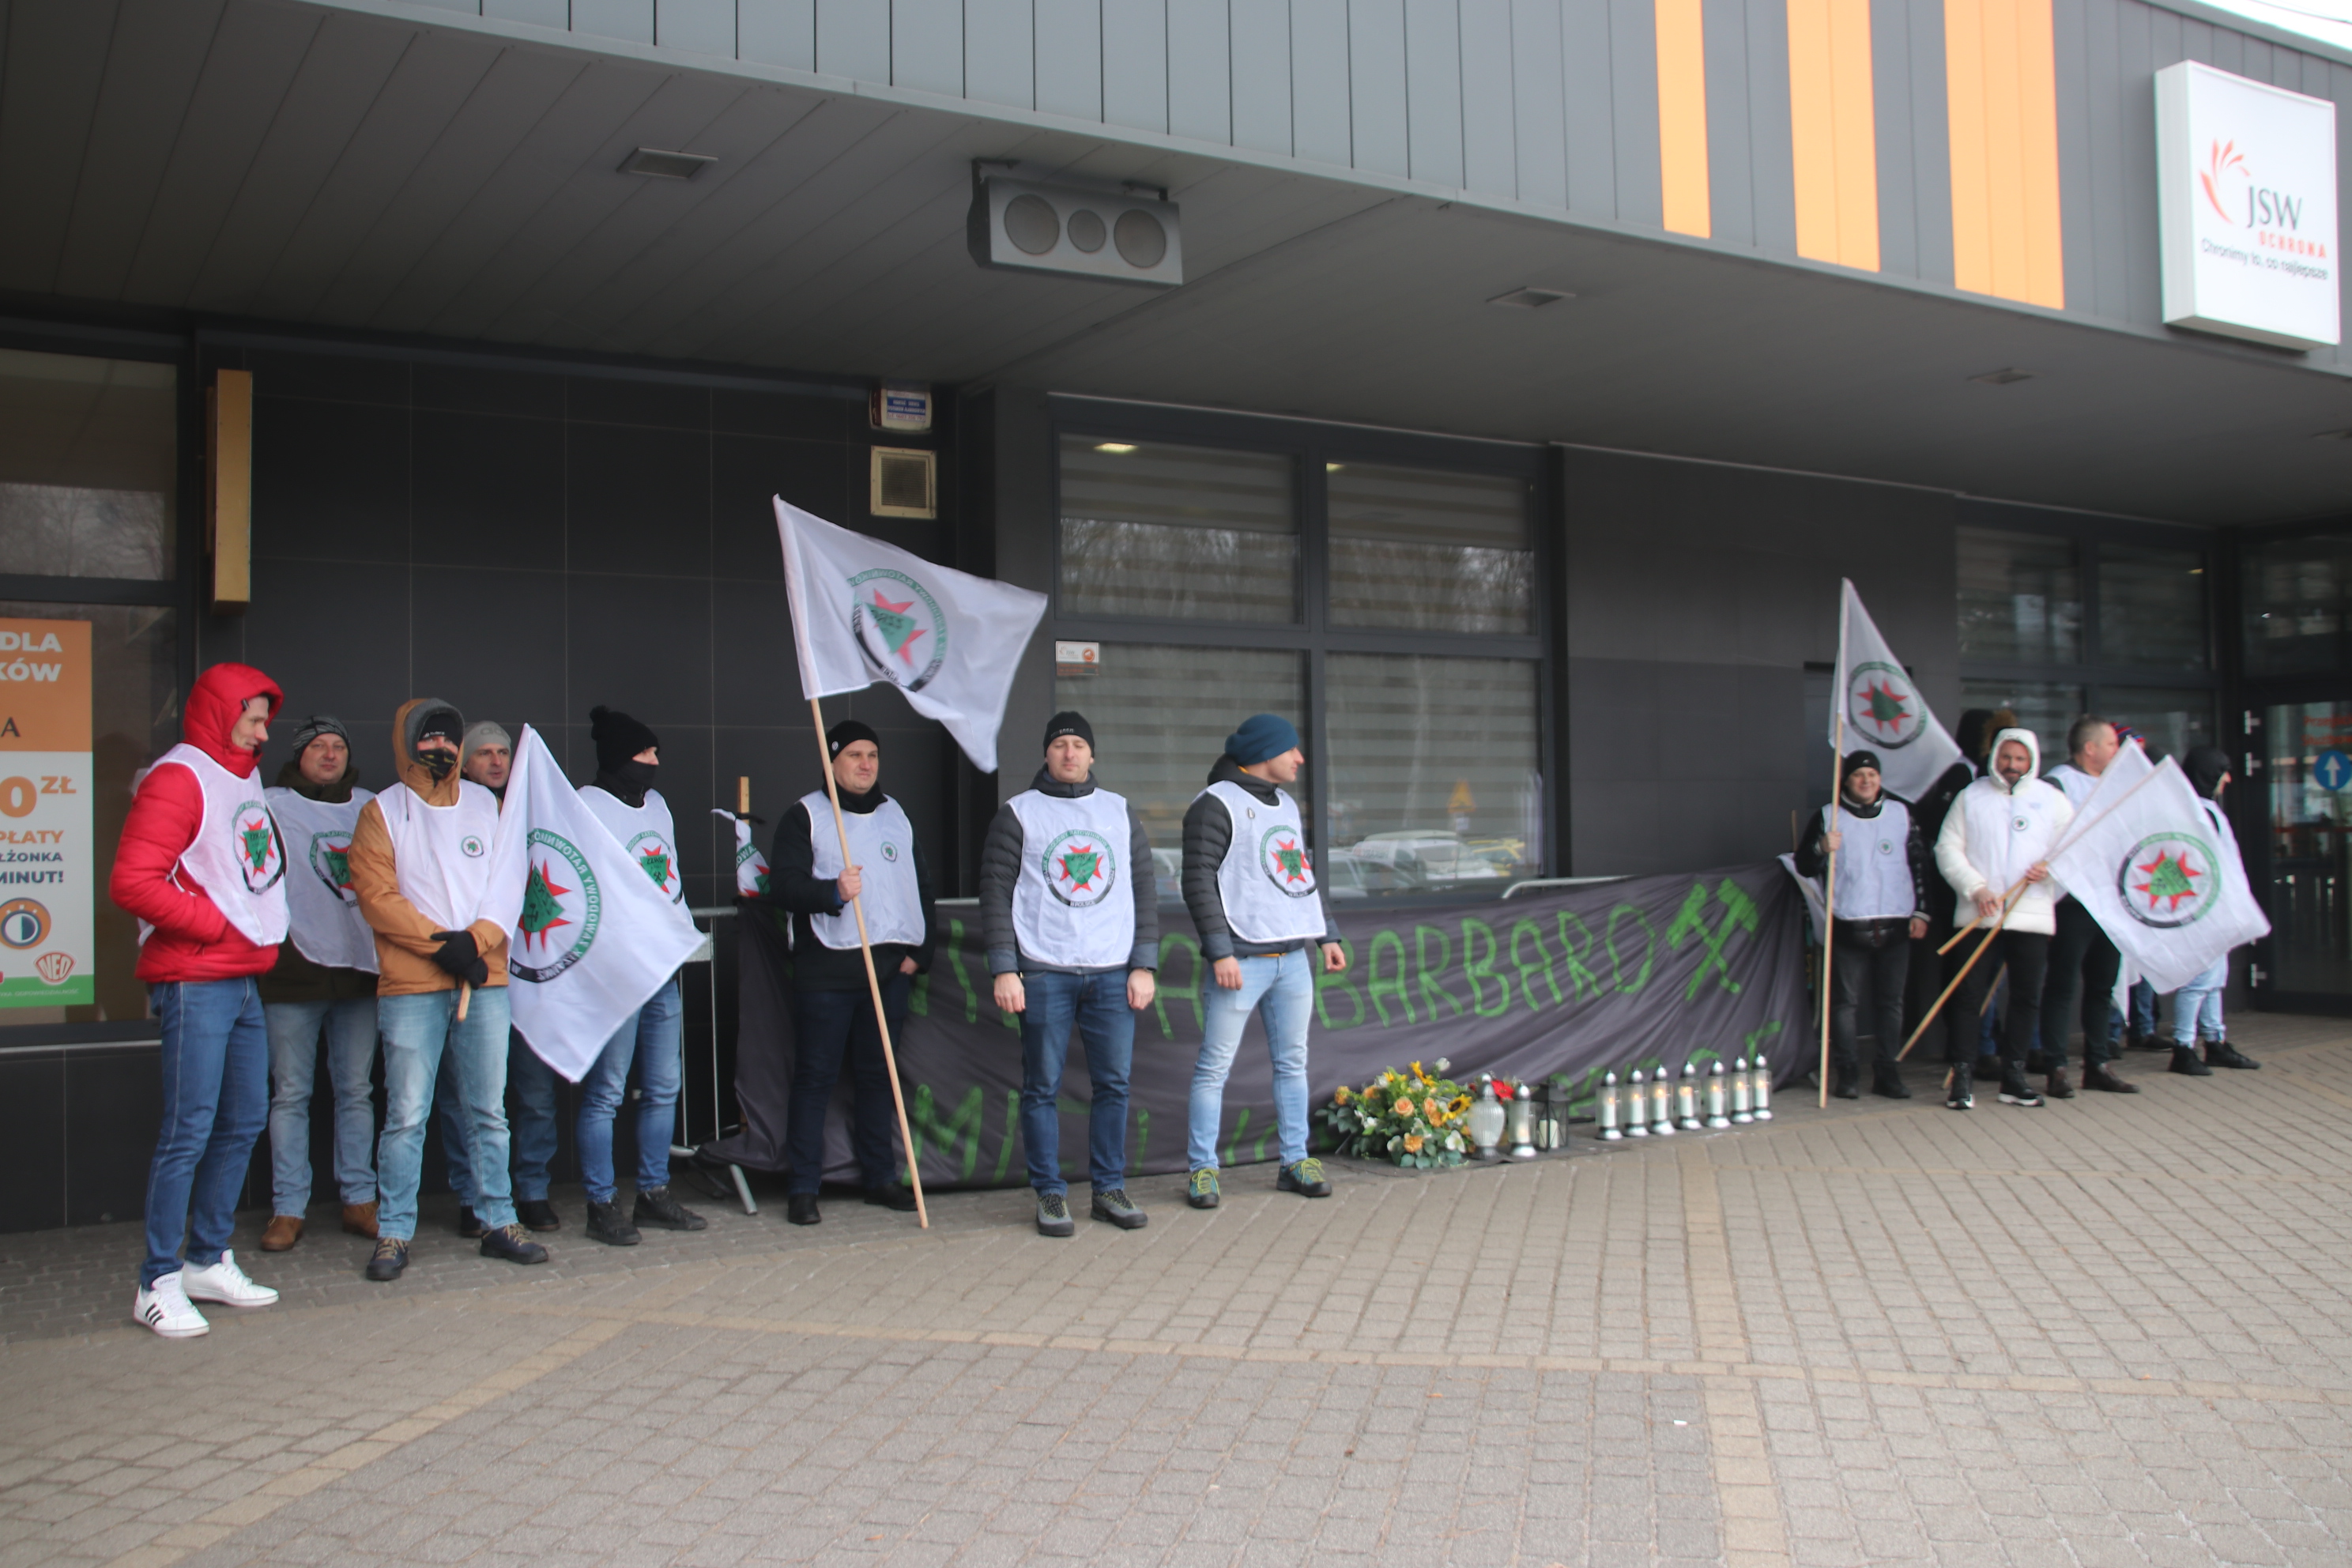 Ratownicy górniczy zebrali się przed bramą KWK Pniówek, chcąc wyrazić swoją krytykę wobec braku dodatku dla ratowników. 